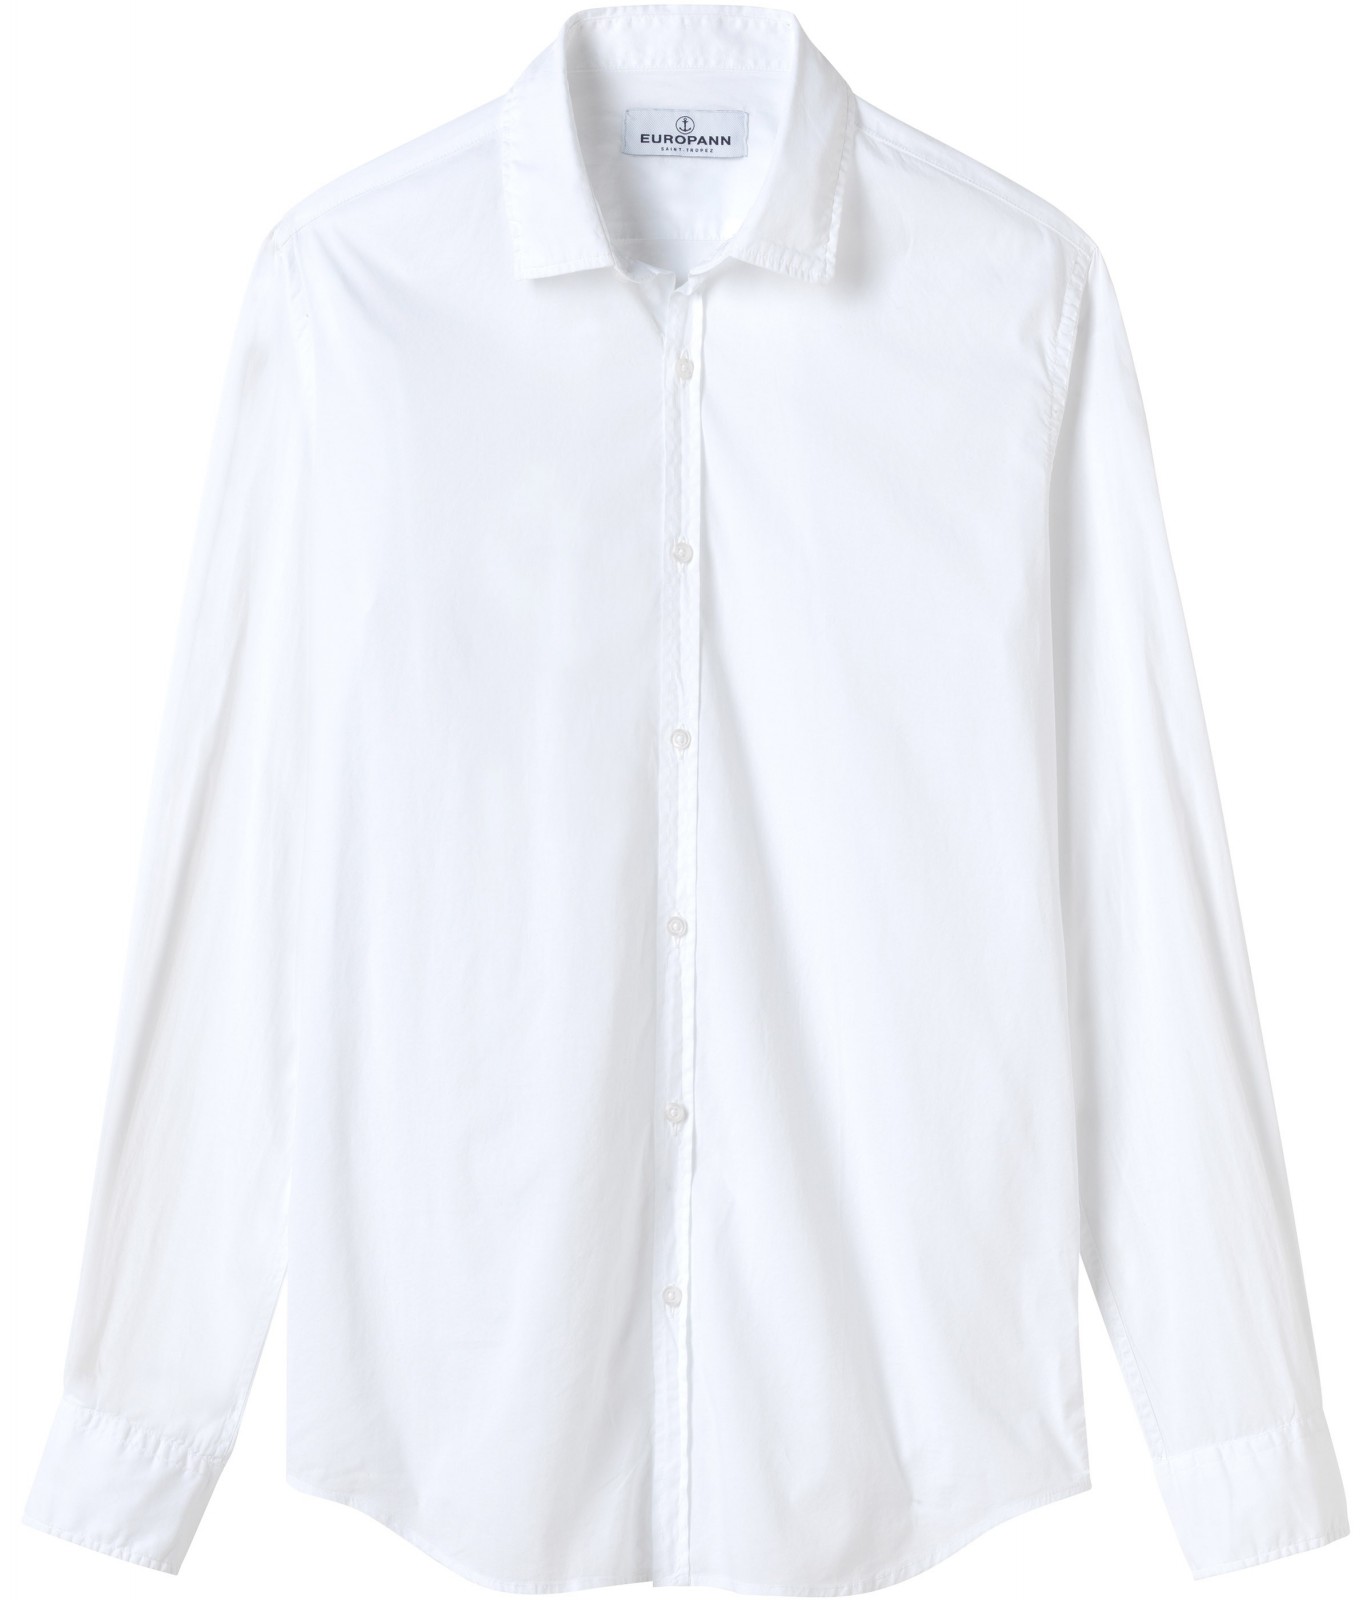 Plain white color long sleeves shirt for men | Quality brand Europann